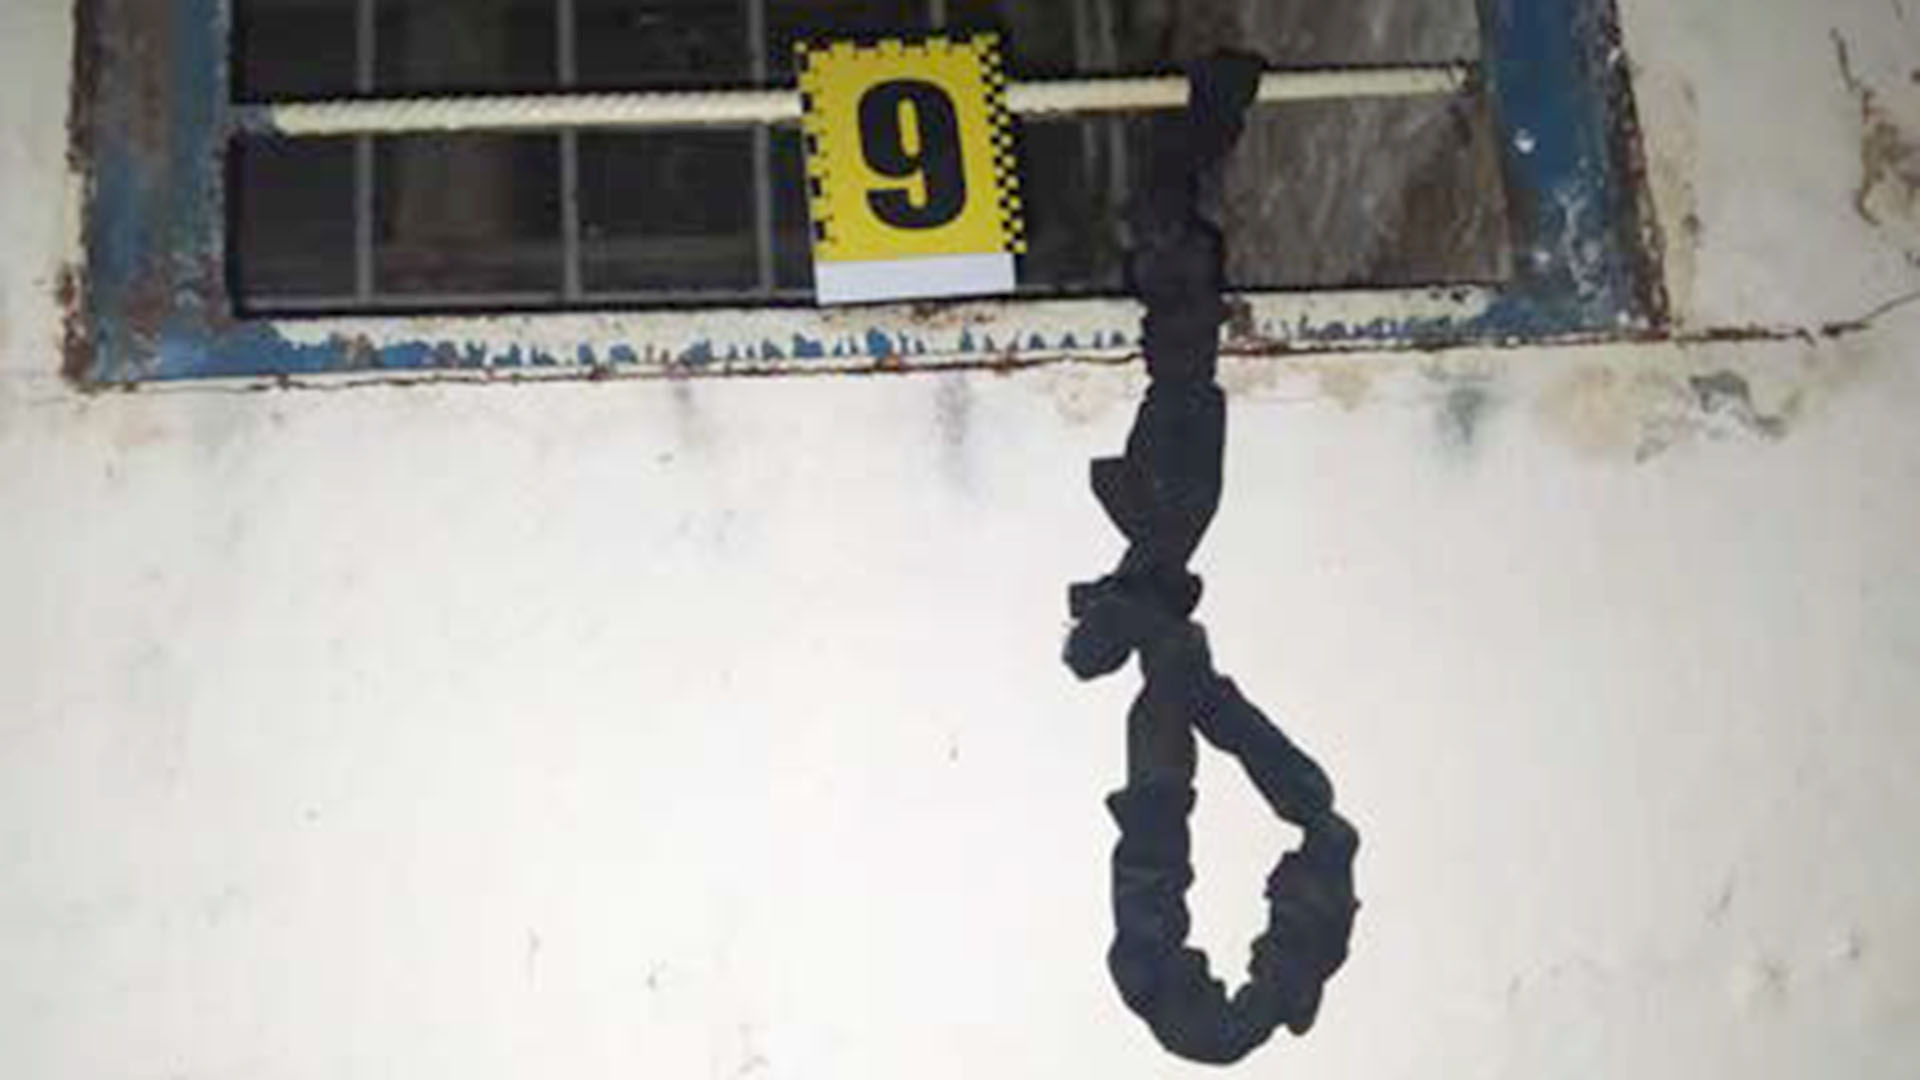 Cuerda encontrada en una cámara de tortura. Fotografía de la policía de Kherson.